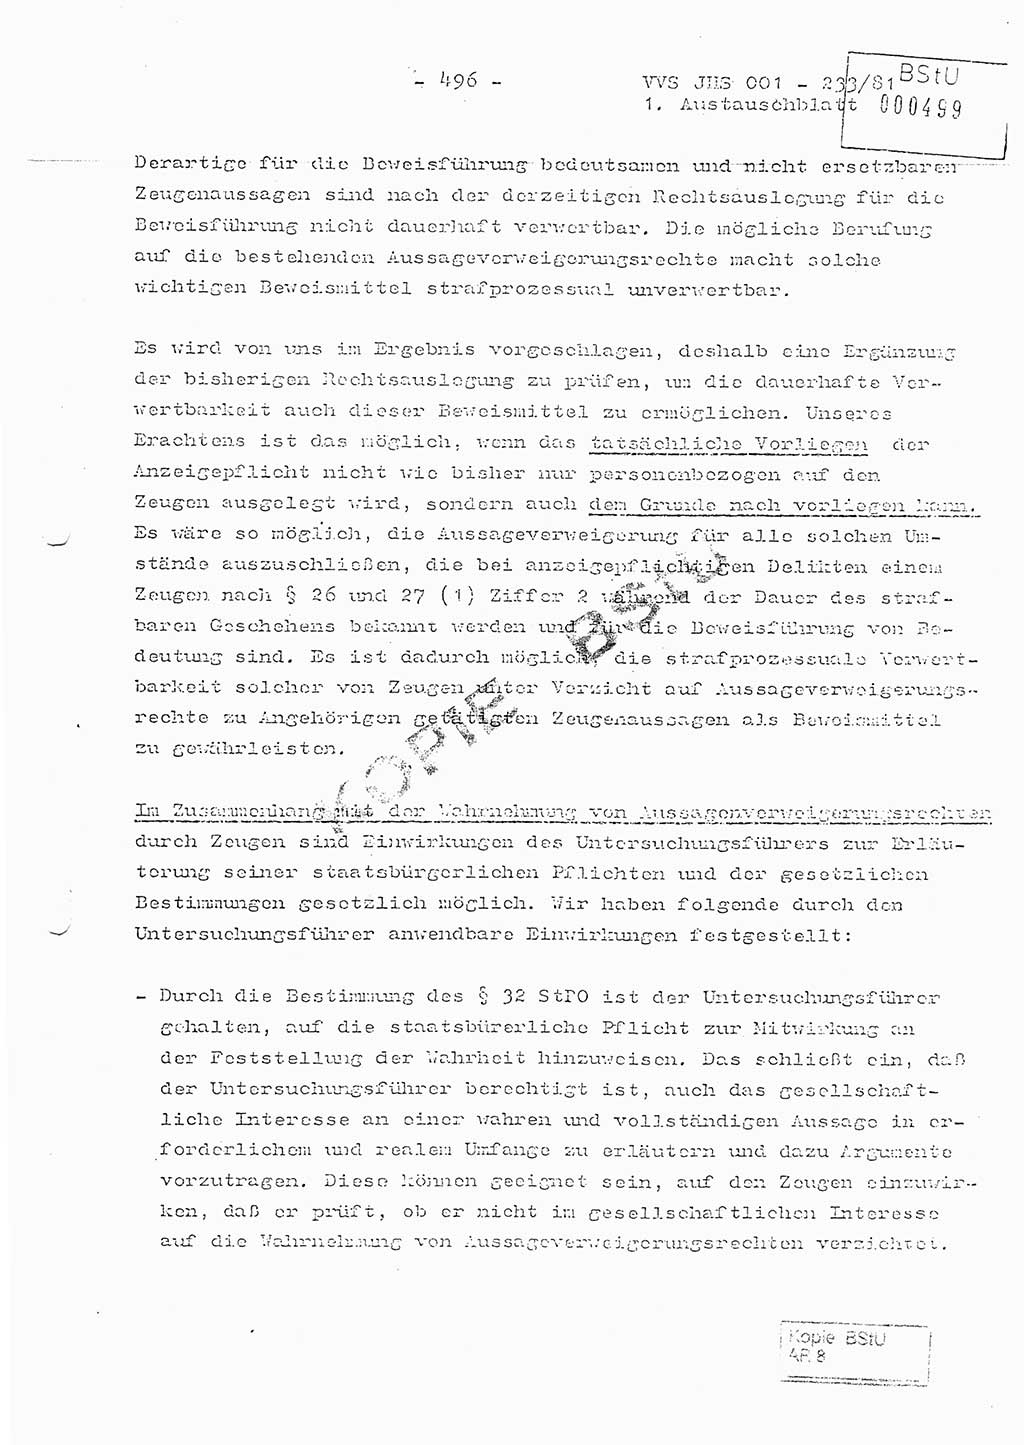 Dissertation Oberstleutnant Horst Zank (JHS), Oberstleutnant Dr. Karl-Heinz Knoblauch (JHS), Oberstleutnant Gustav-Adolf Kowalewski (HA Ⅸ), Oberstleutnant Wolfgang Plötner (HA Ⅸ), Ministerium für Staatssicherheit (MfS) [Deutsche Demokratische Republik (DDR)], Juristische Hochschule (JHS), Vertrauliche Verschlußsache (VVS) o001-233/81, Potsdam 1981, Blatt 496 (Diss. MfS DDR JHS VVS o001-233/81 1981, Bl. 496)